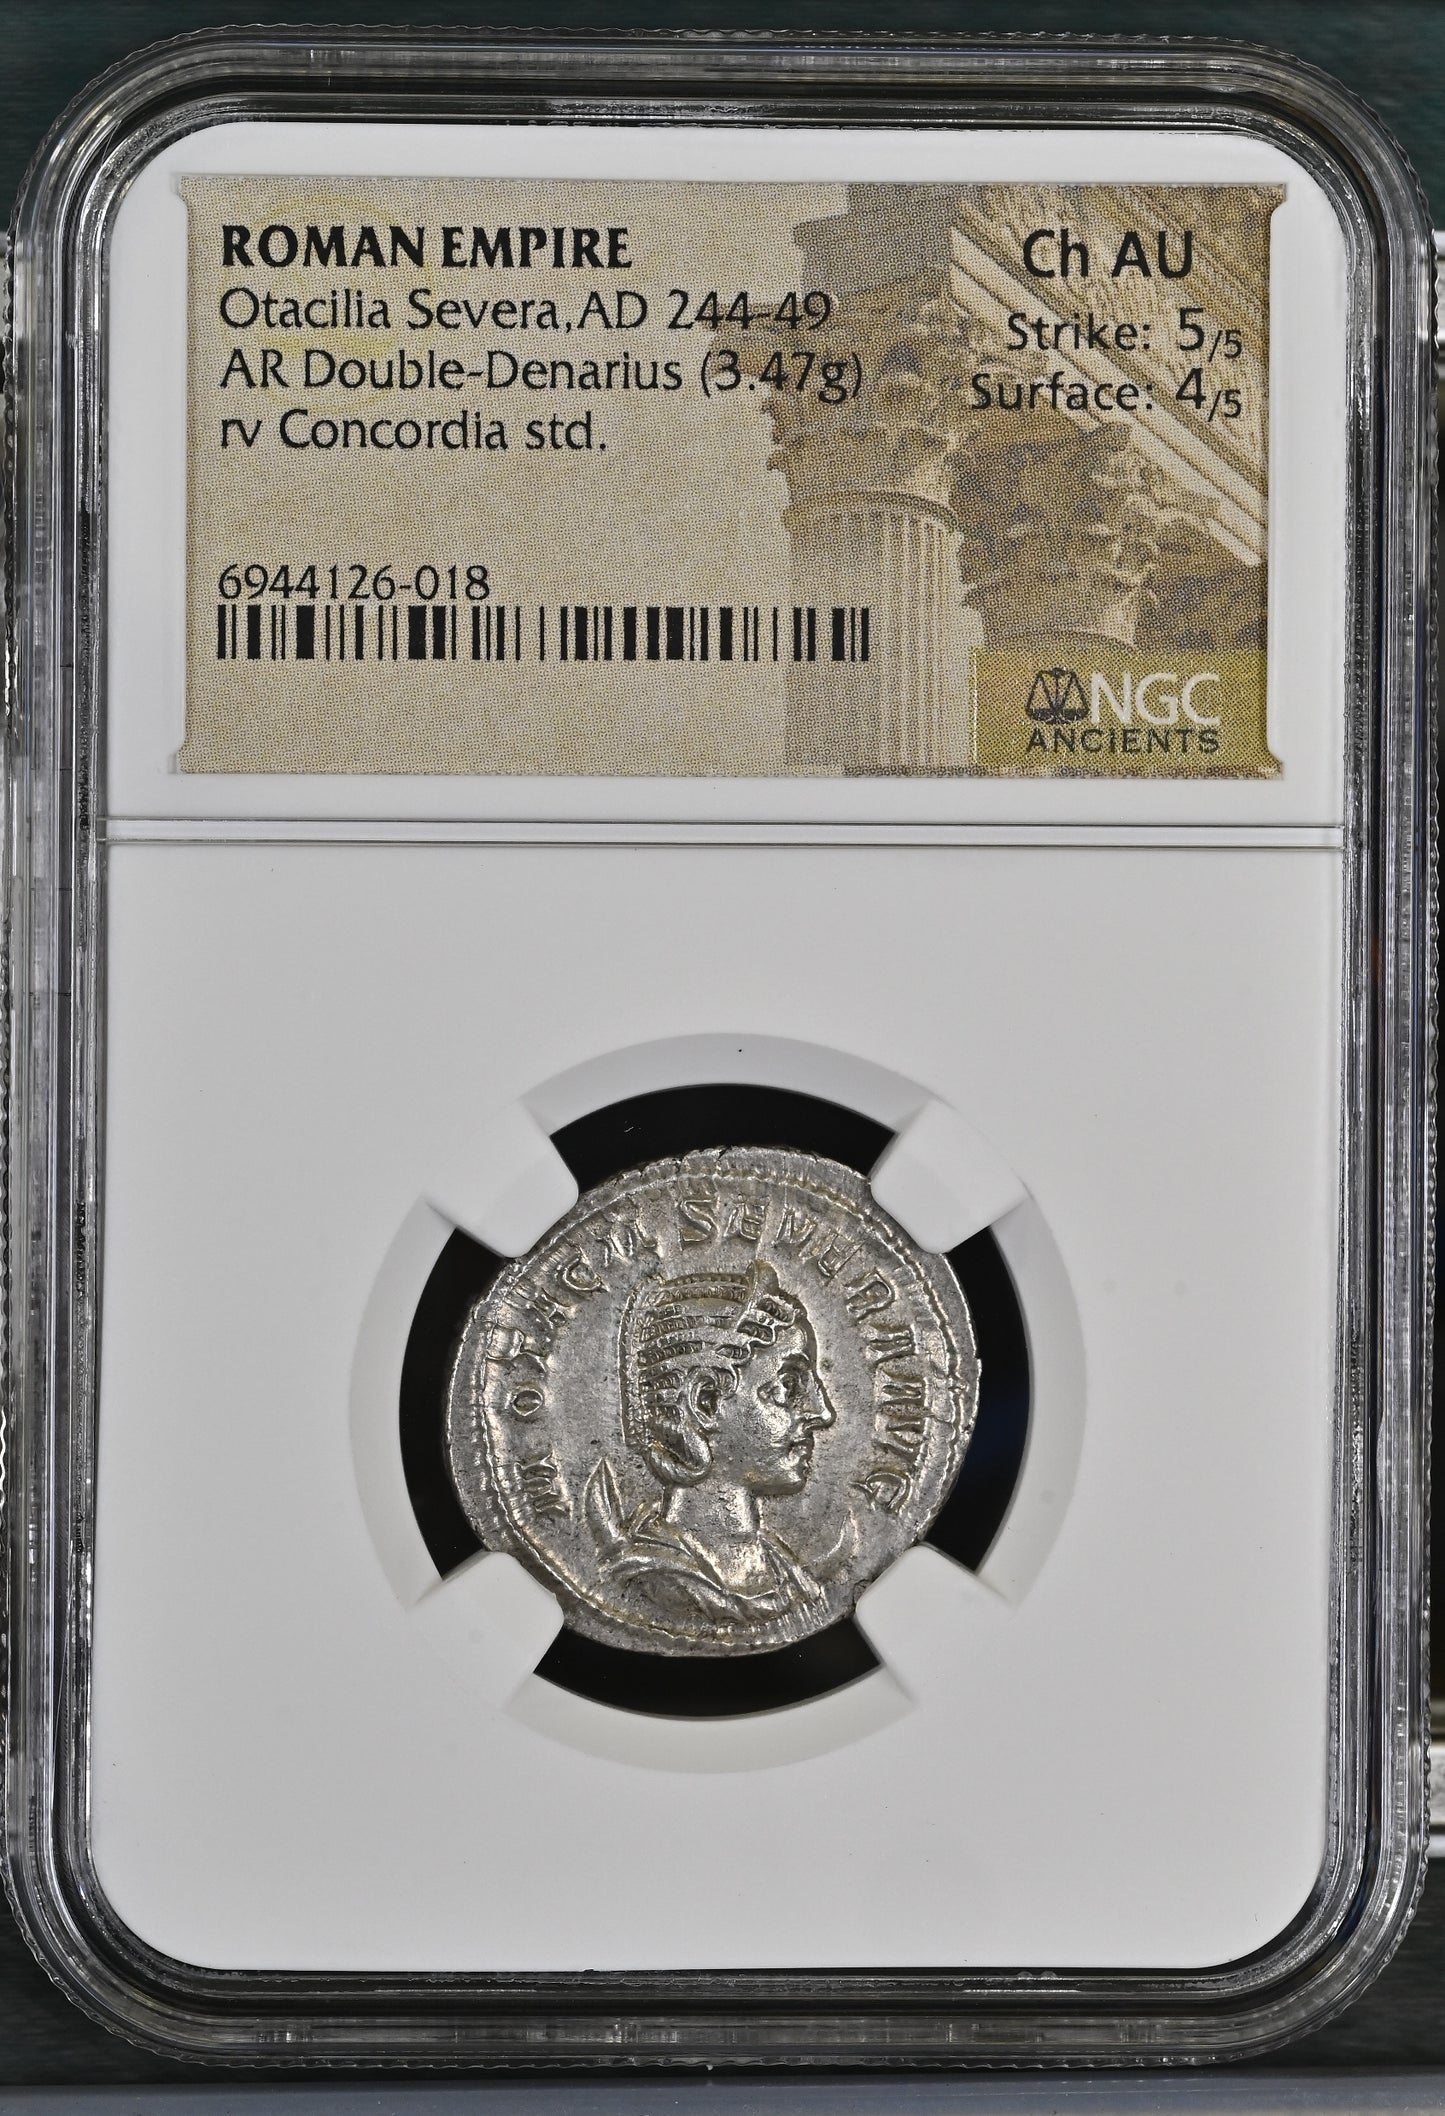 Roman Empire - Otacilia Severa - Silver Double-Denarius - NGC Ch AU - RIC:126